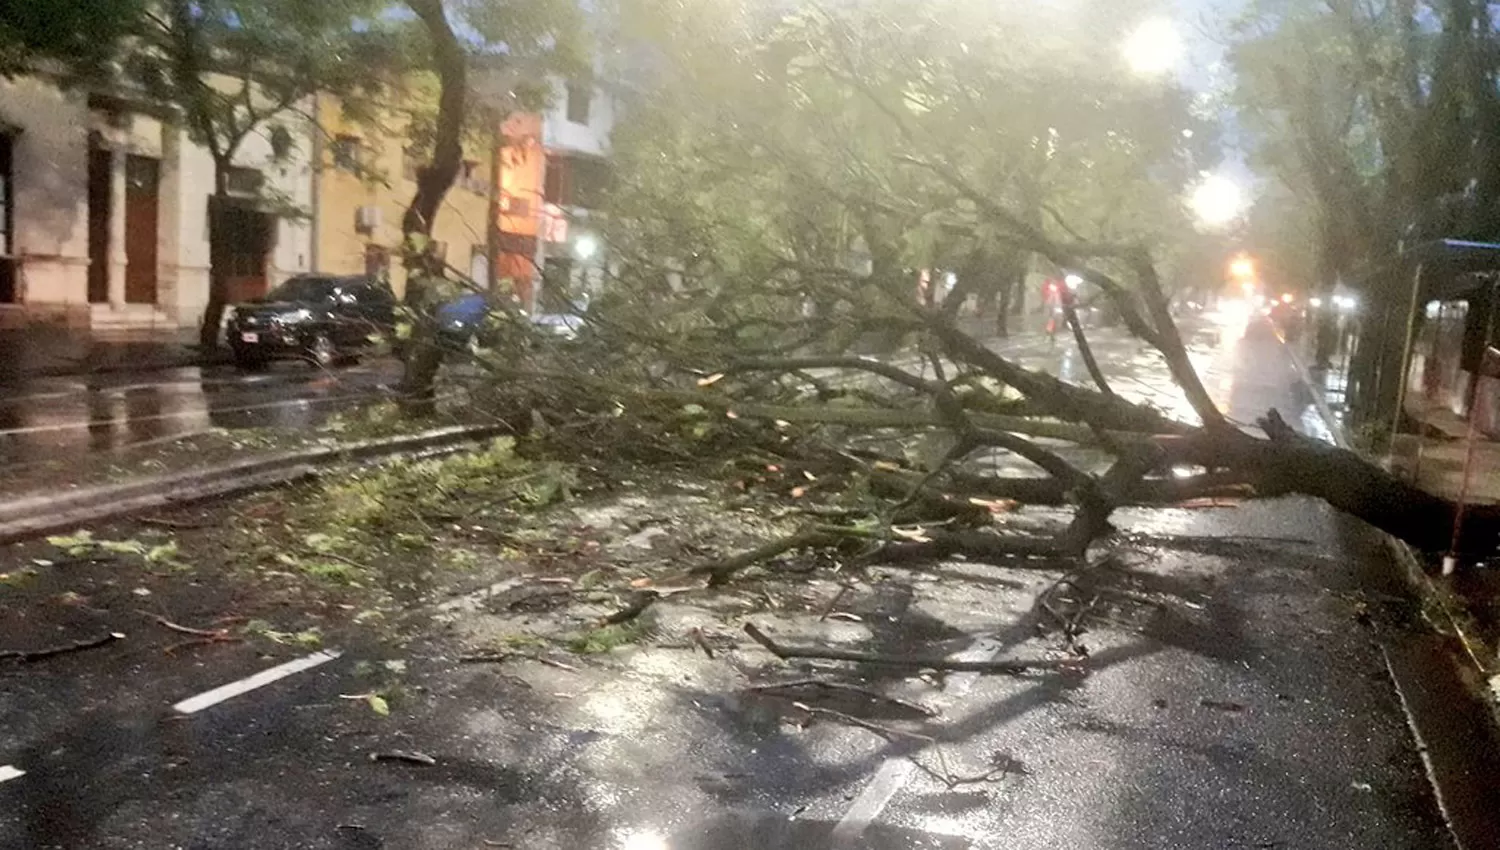 MANO CORTADA. Las ramas del añejo árbol mantienen interrumpido el tránsito por la mano este de la avenida Sáenz Peña al 100.